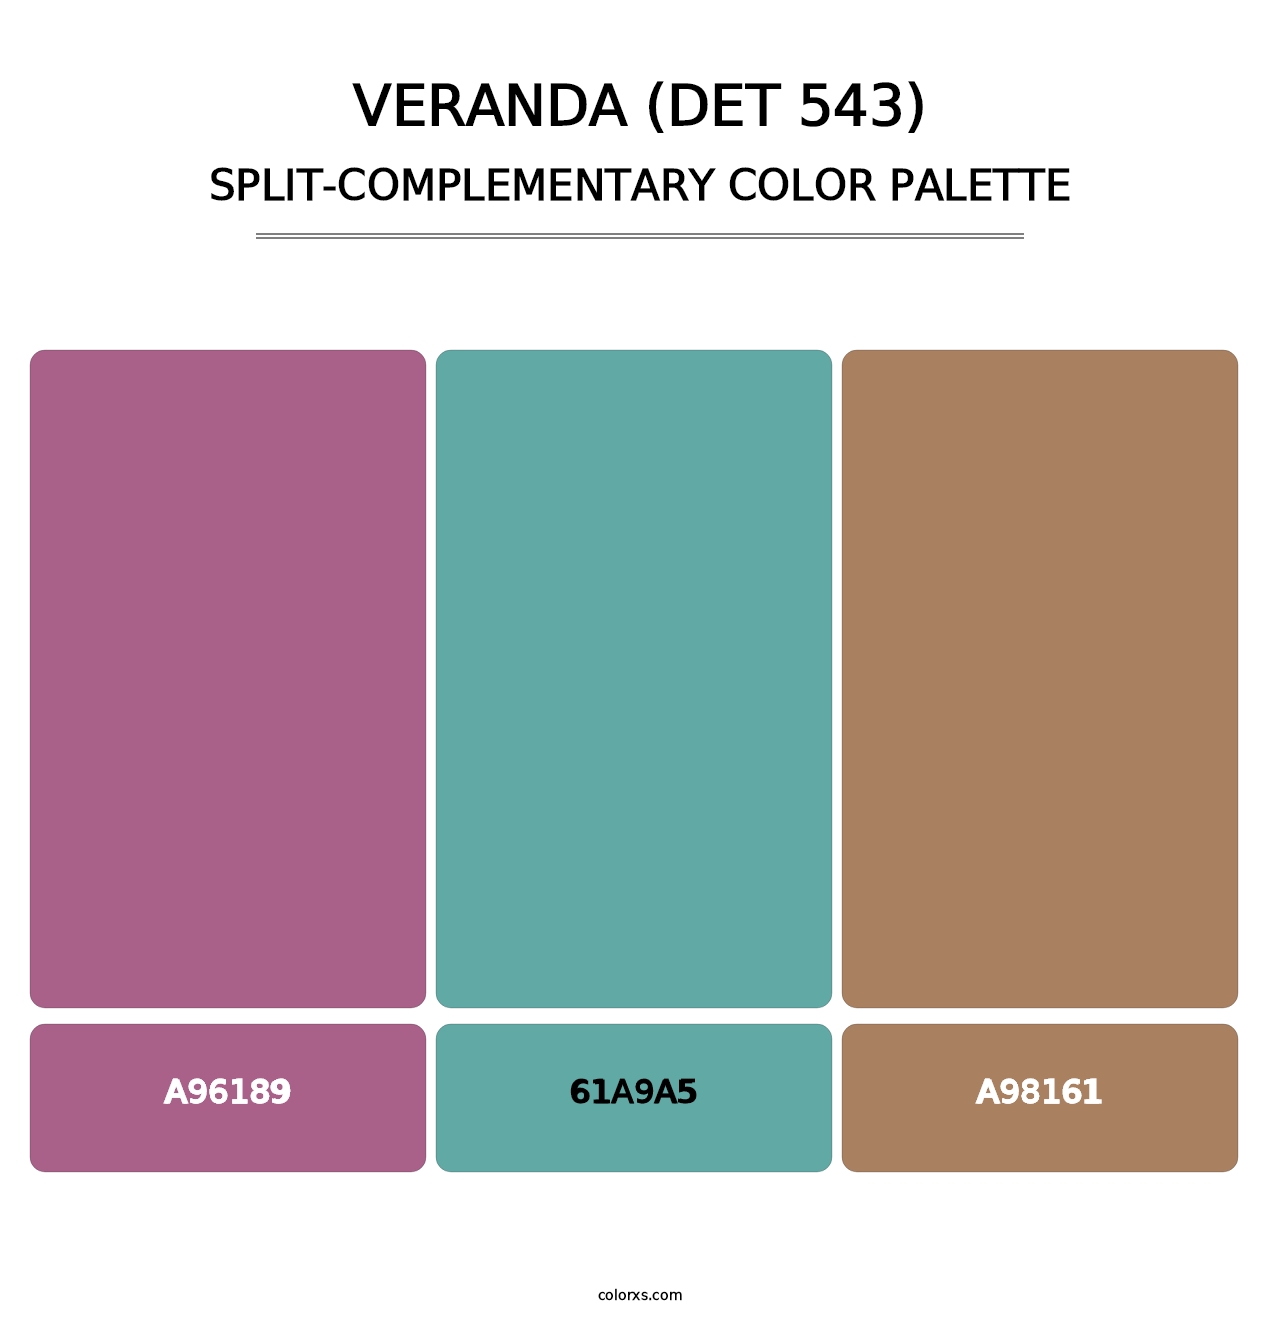 Veranda (DET 543) - Split-Complementary Color Palette